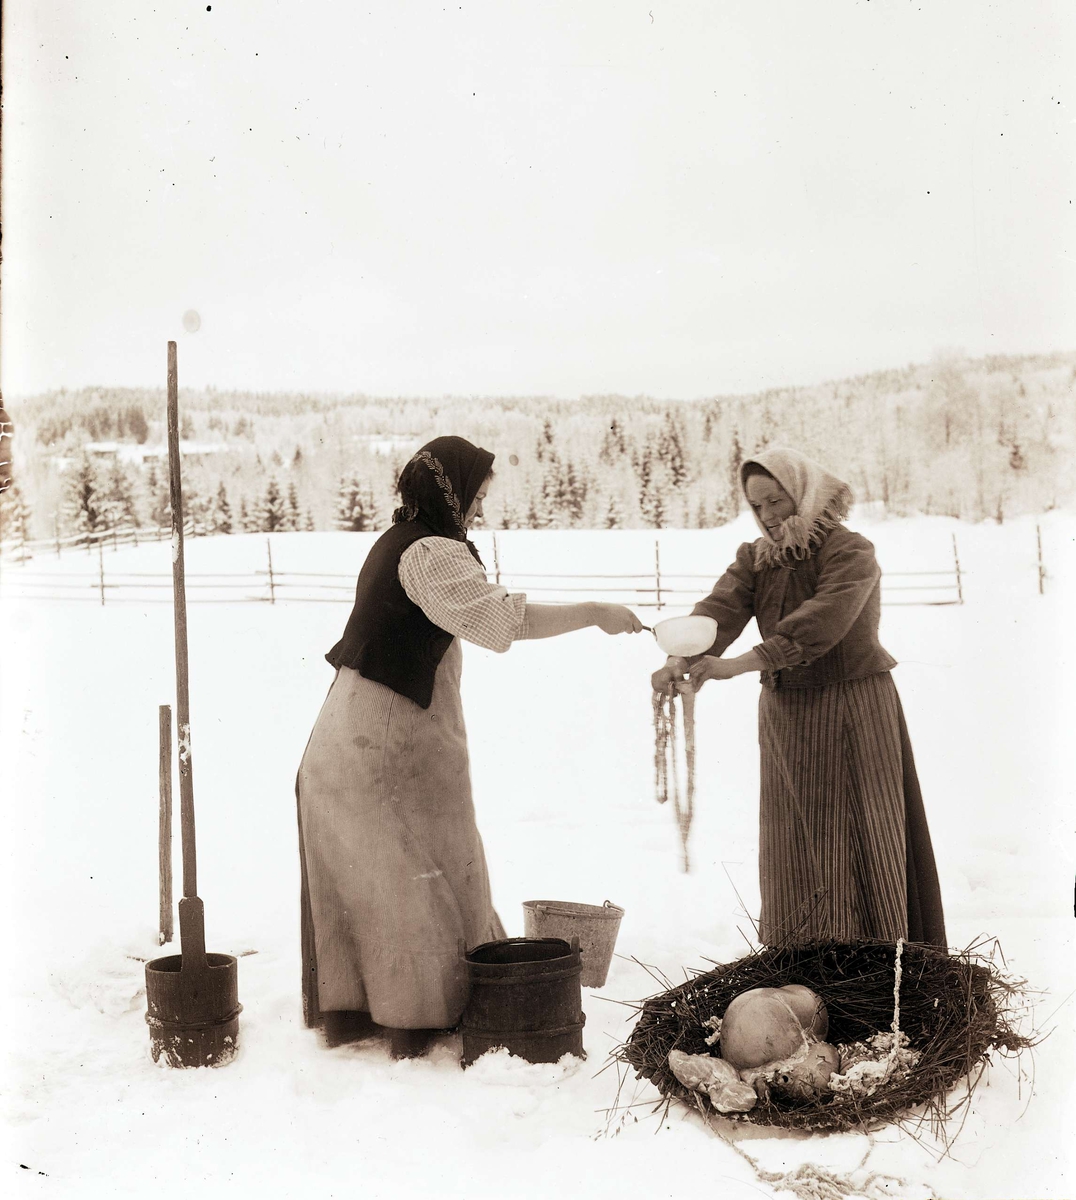 Slakt. Två kvinnor sköljer fårtarmar på vintern utomhus. "Tarmvänning"